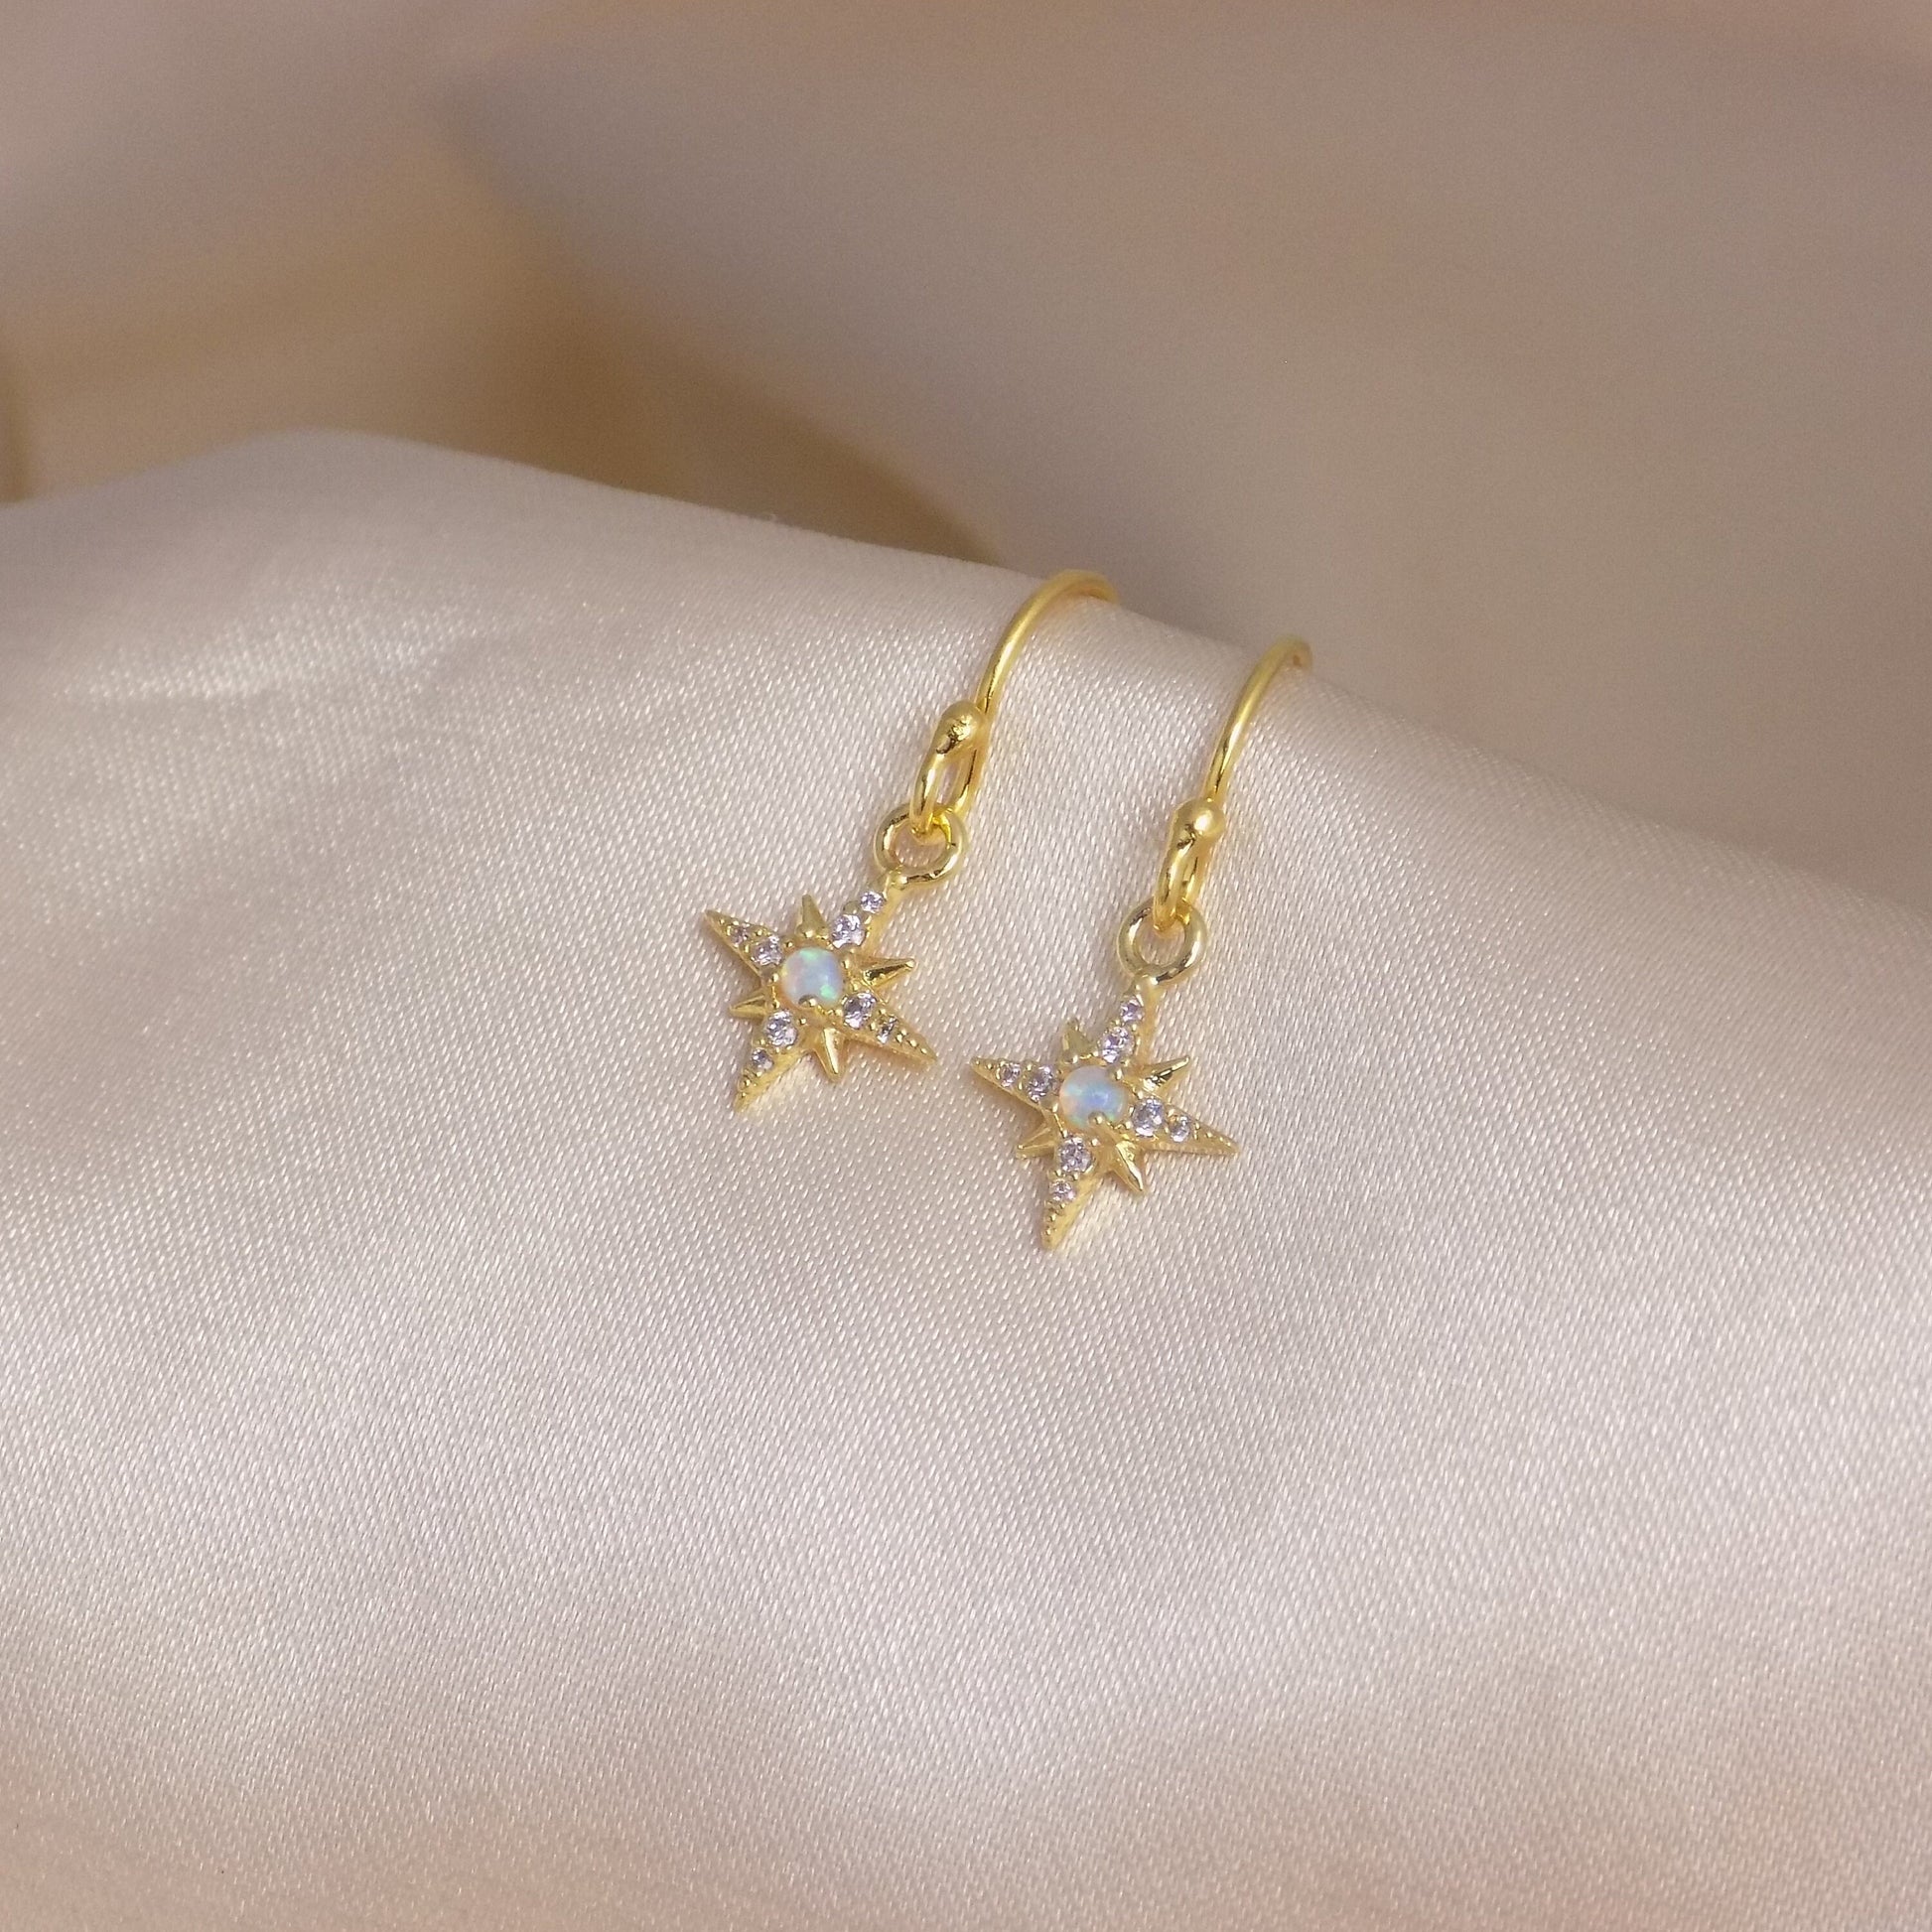 Gold Opal Star Earrings - Tiny Drop Opal Earring